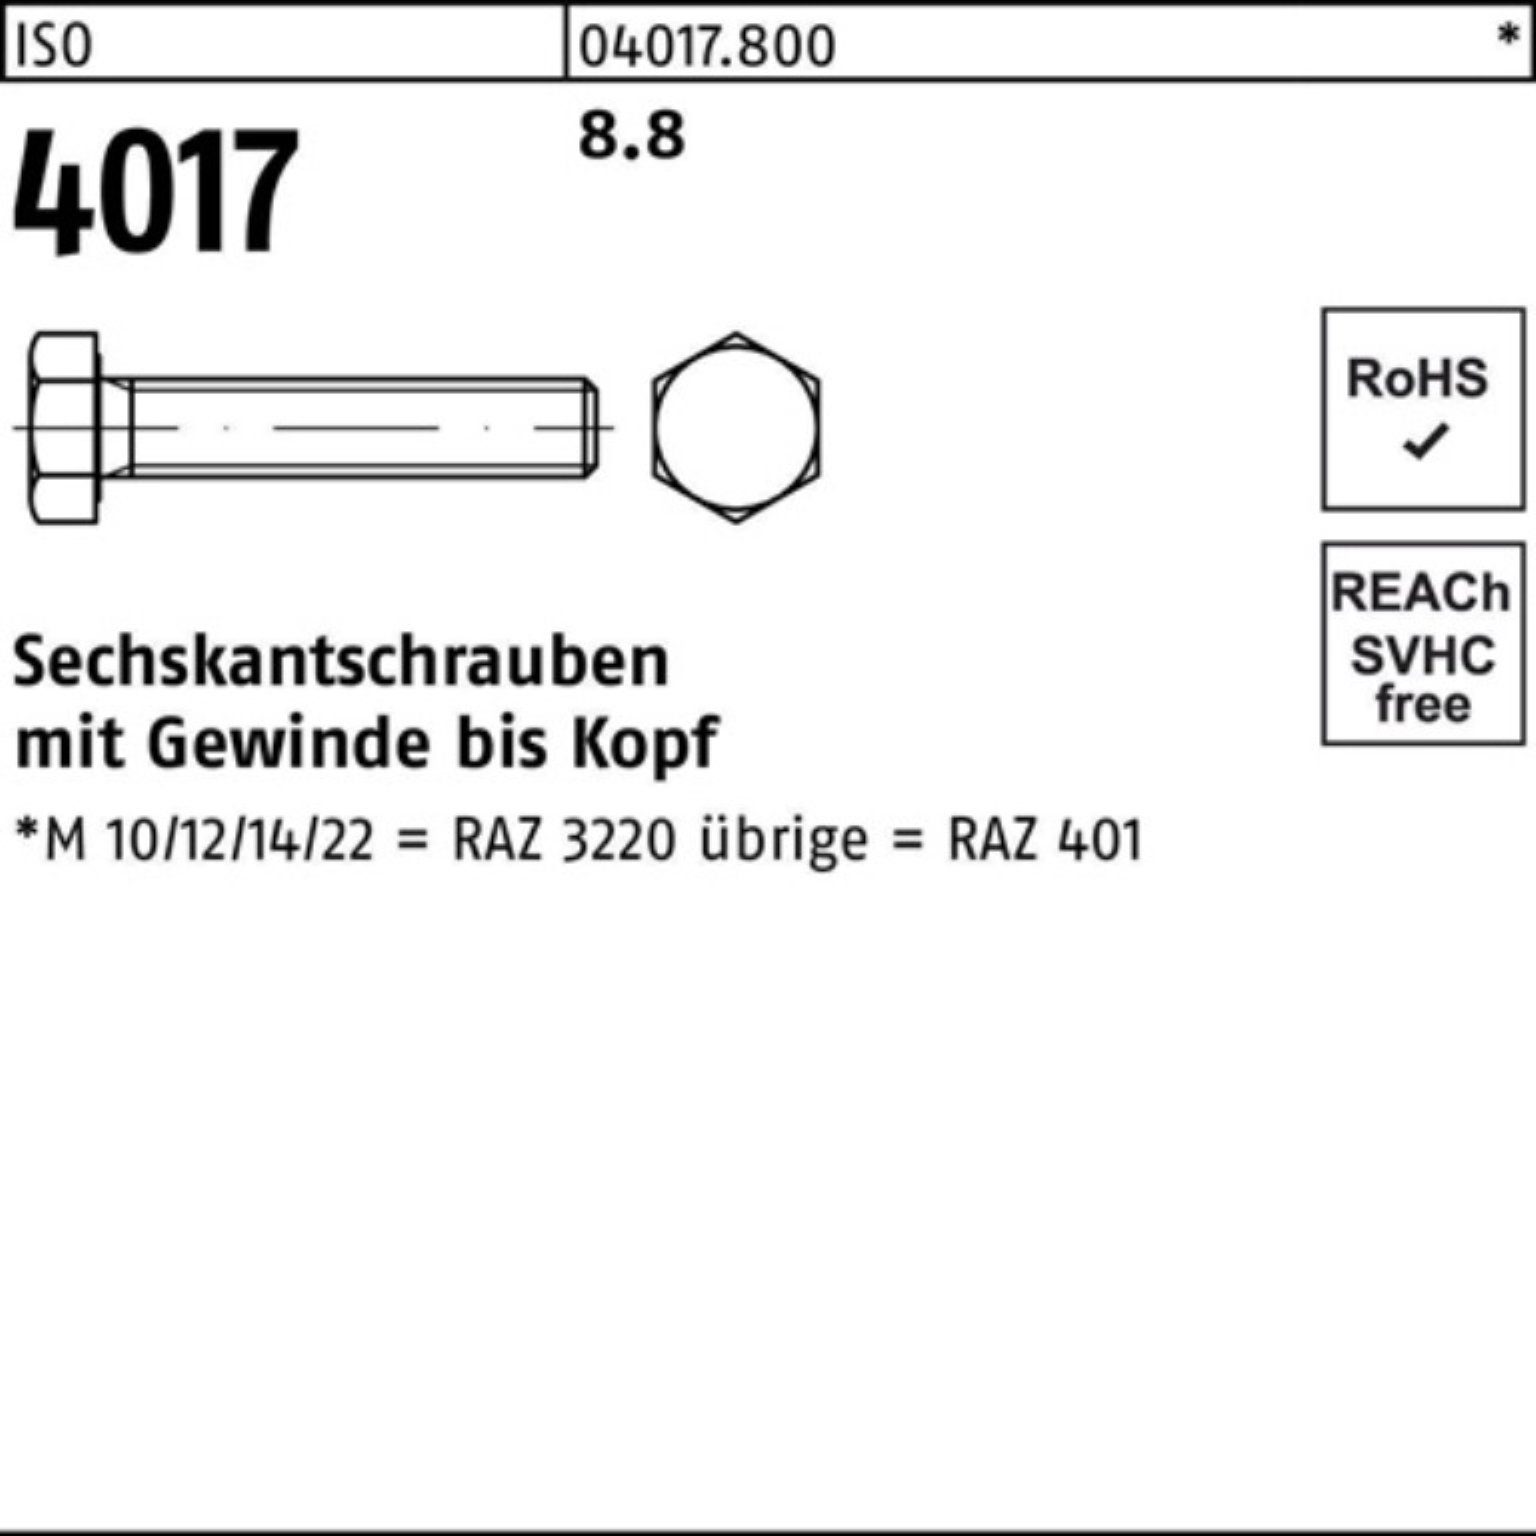 Bufab Sechskantschraube 200er Stück 20 Pack 4017 8.8 Sechskantschraube ISO ISO 401 VG M8x 200